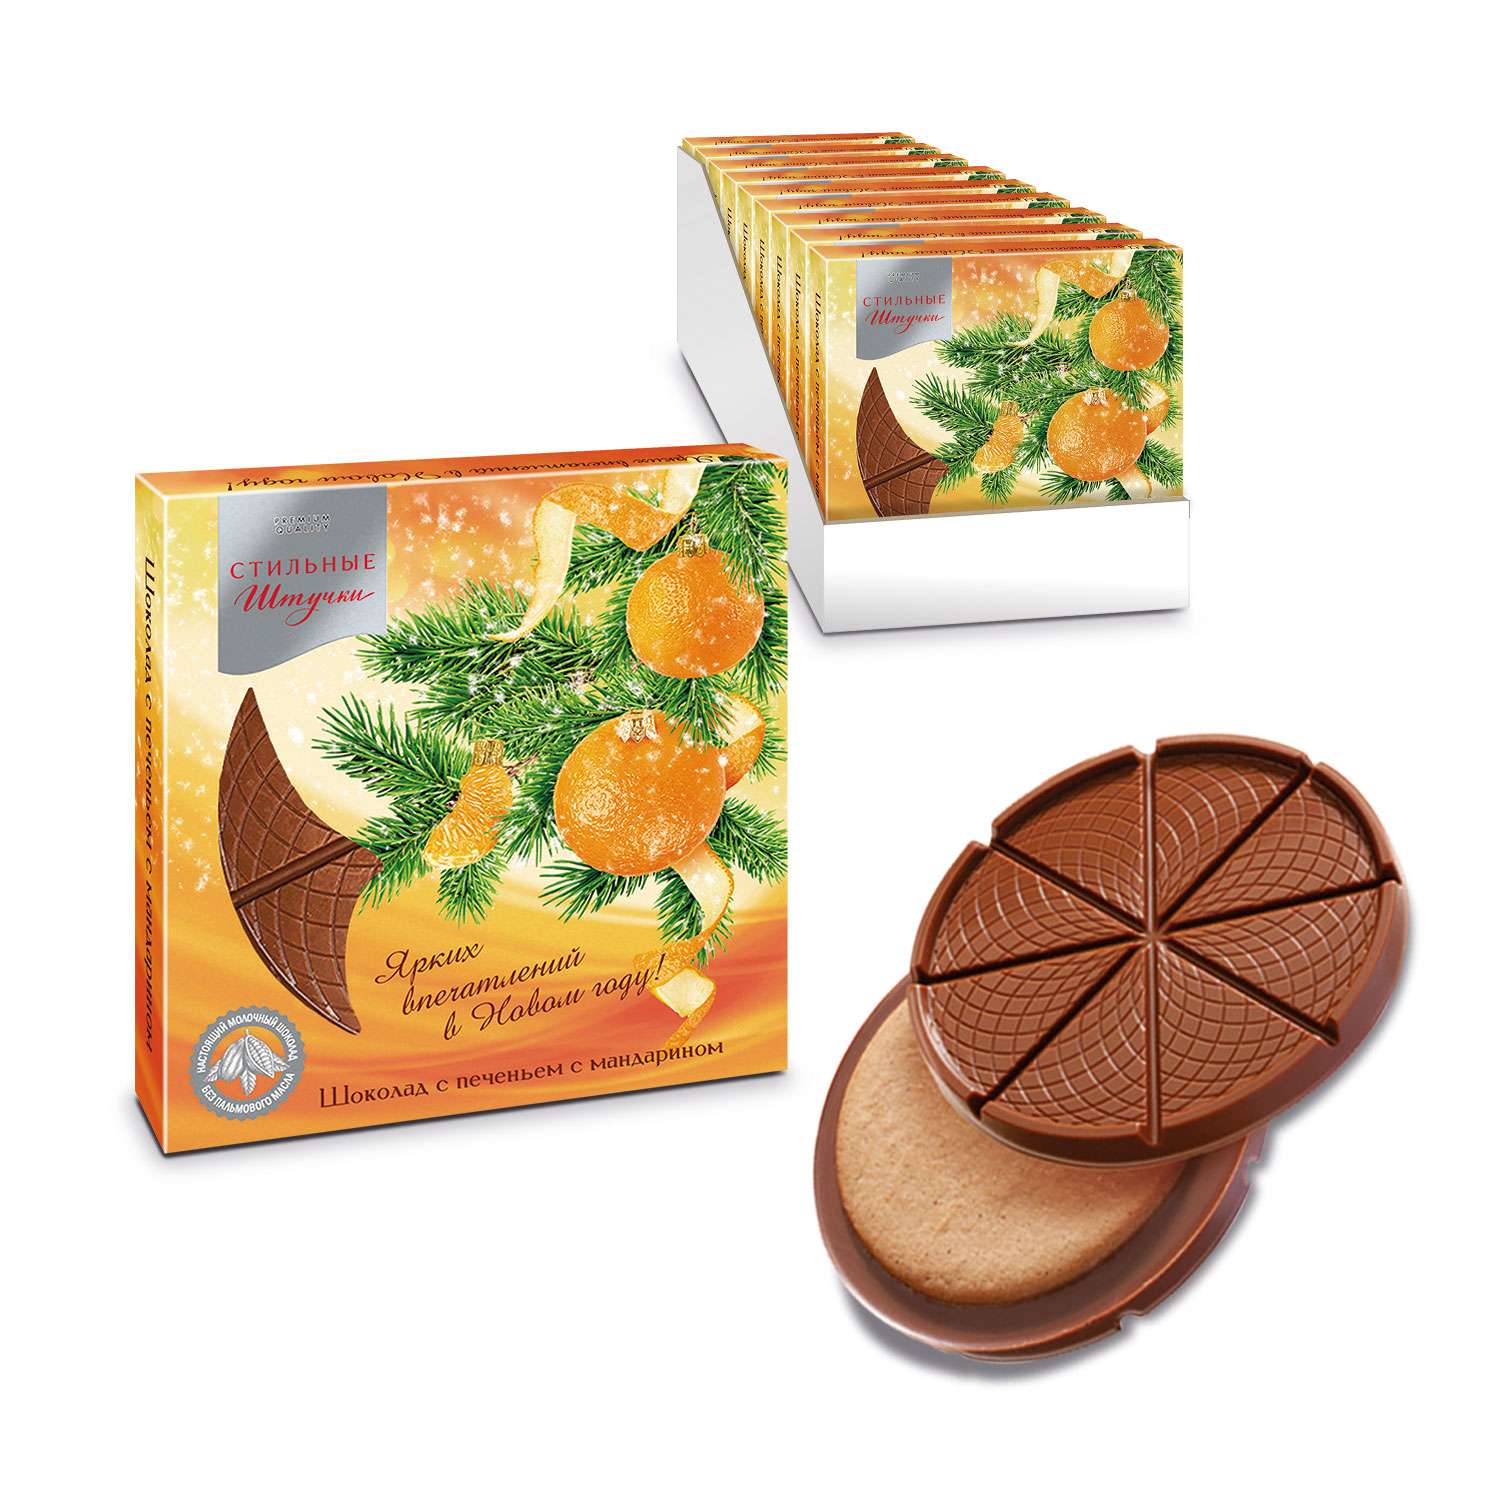 Шоколад с печеньем Стильные штучки сладкий подарок с мандарином 18 шт. по 45 г - фото 1